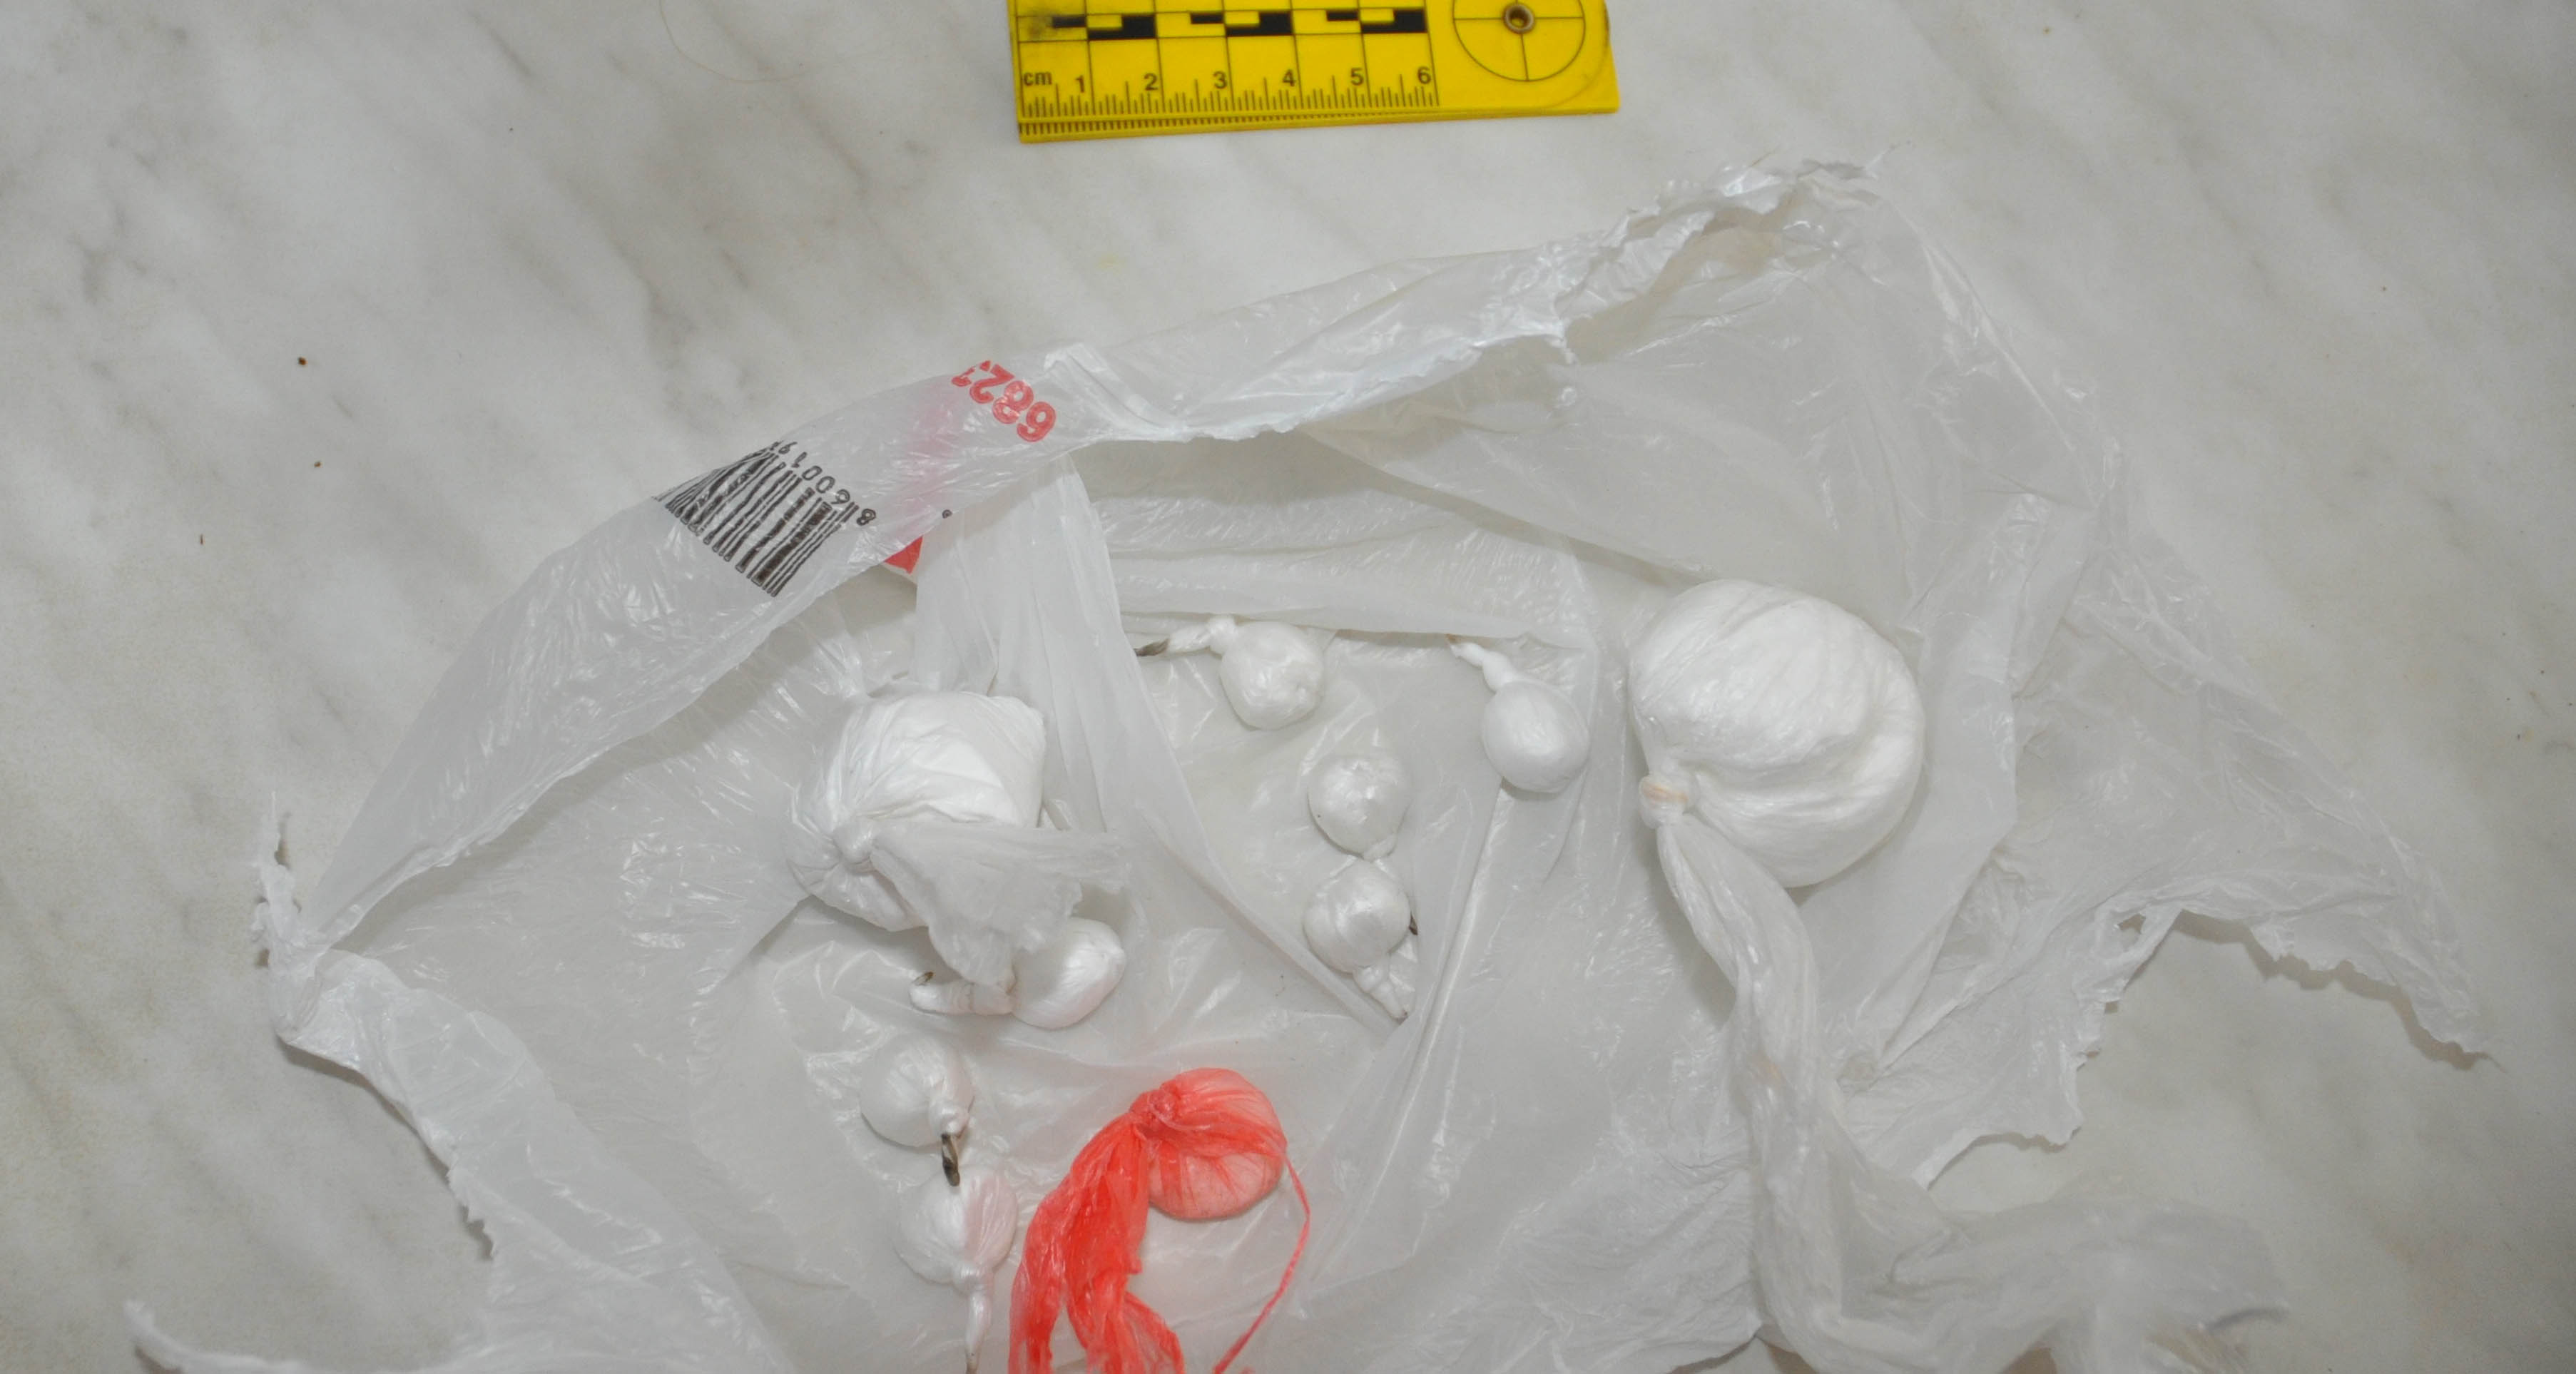 Полиција у стану ухапшеног пронашла 1,6 кг марихуане, око 40 грама кокаина, мању количину амфетамина и пиштољ